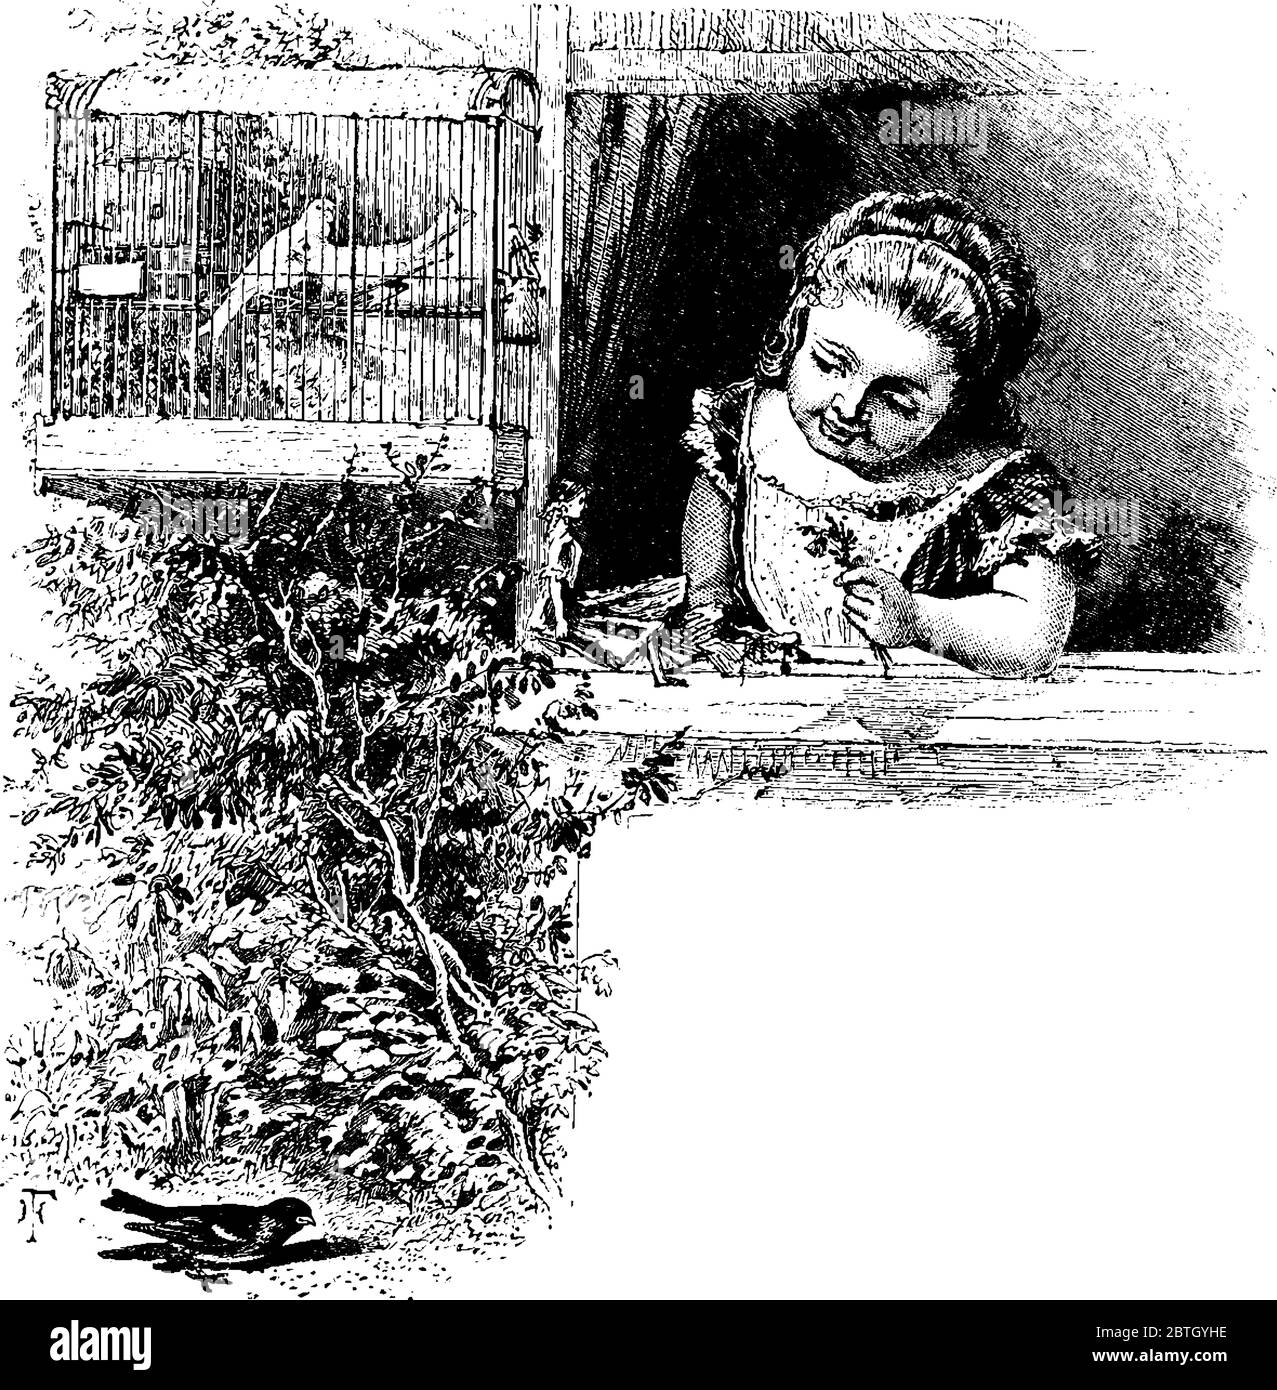 Bambina guardando Bird mangiare grano seme attraverso finestra., disegno di linea vintage o incisione illustrazione. Illustrazione Vettoriale